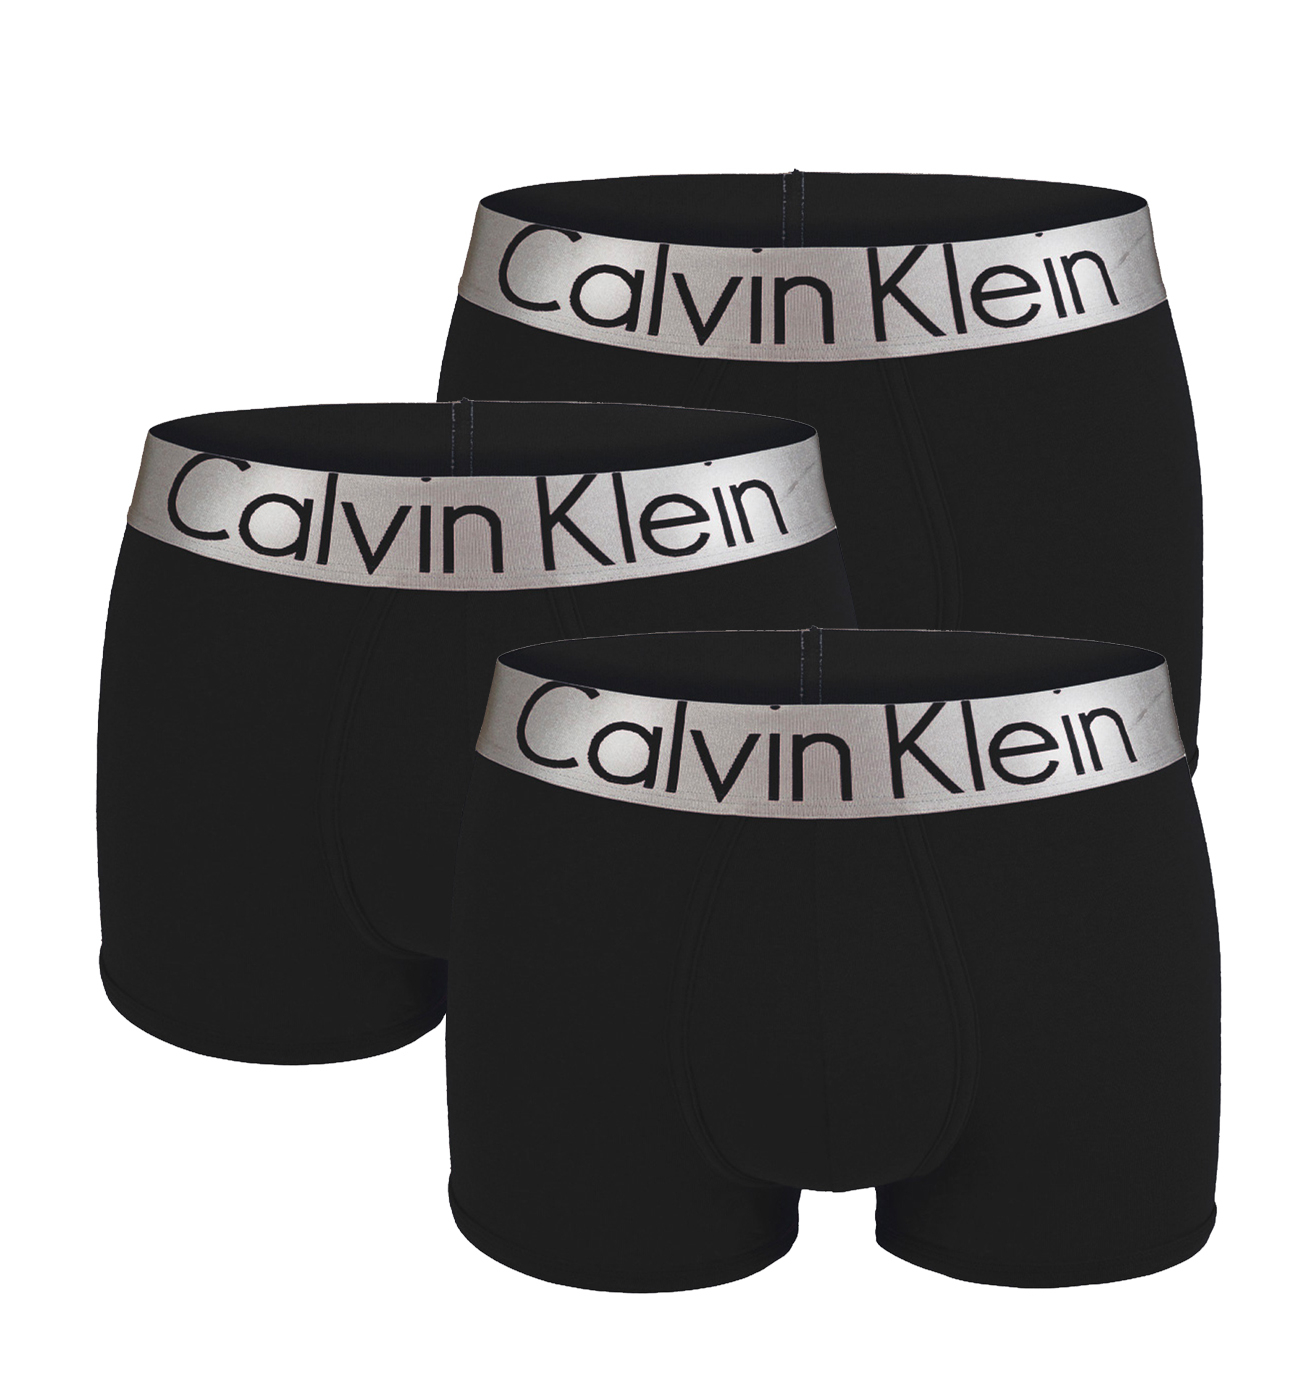 E-shop CALVIN KLEIN - boxerky 3PACK steel cotton black color combo-XXL (111-115 cm)